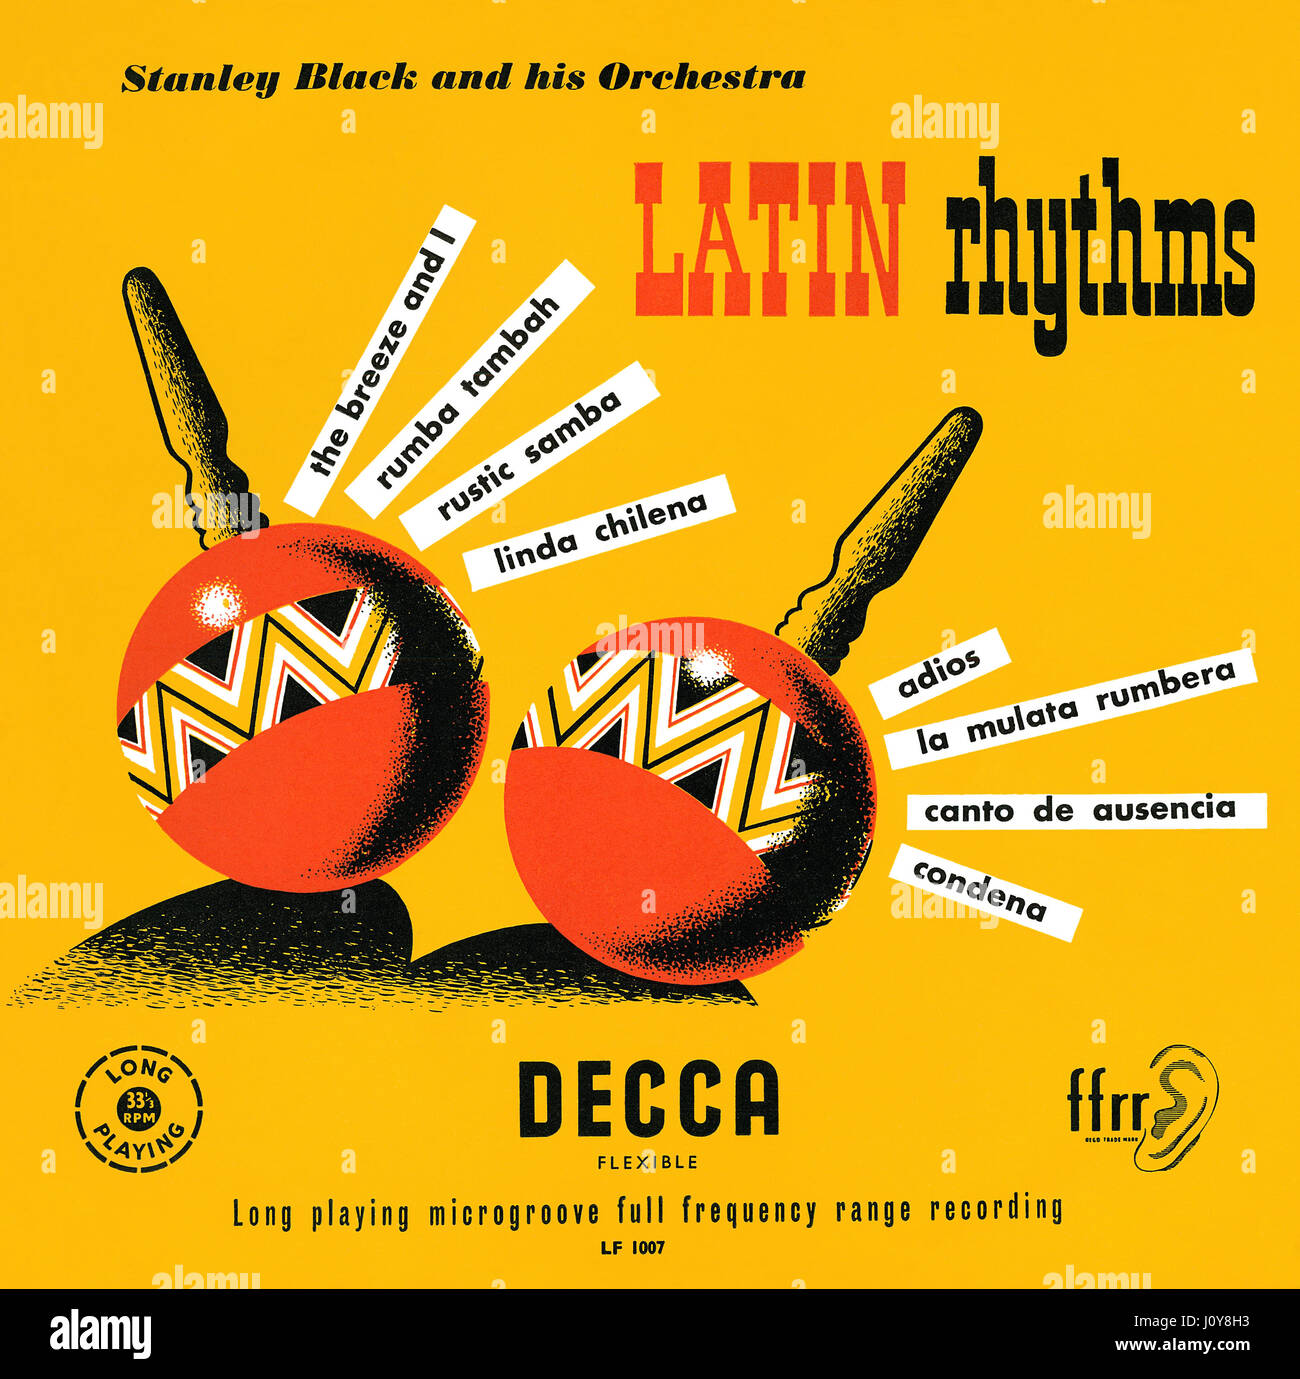 Titelseite der Plattencover für Stanley Black und seinem Orchester 10' LP Latin-Rhythmen. Dieses Vinyl Album wurde 1955 auf Decca Records veröffentlicht. Stockfoto